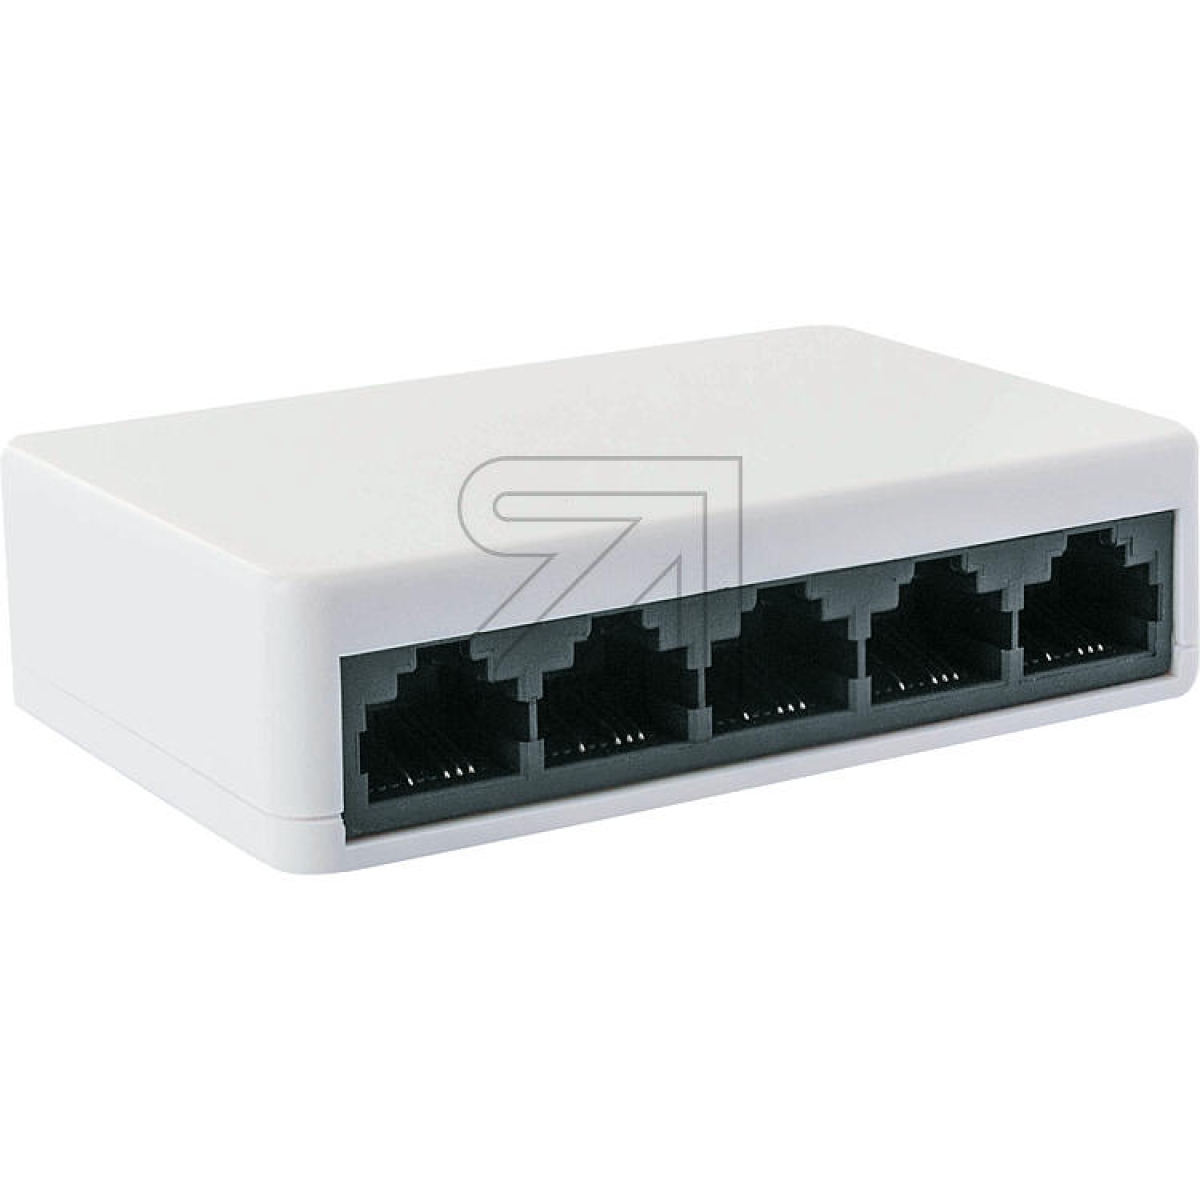 Schwaiger5-Port Netzwerk-Switch NWSW5 011